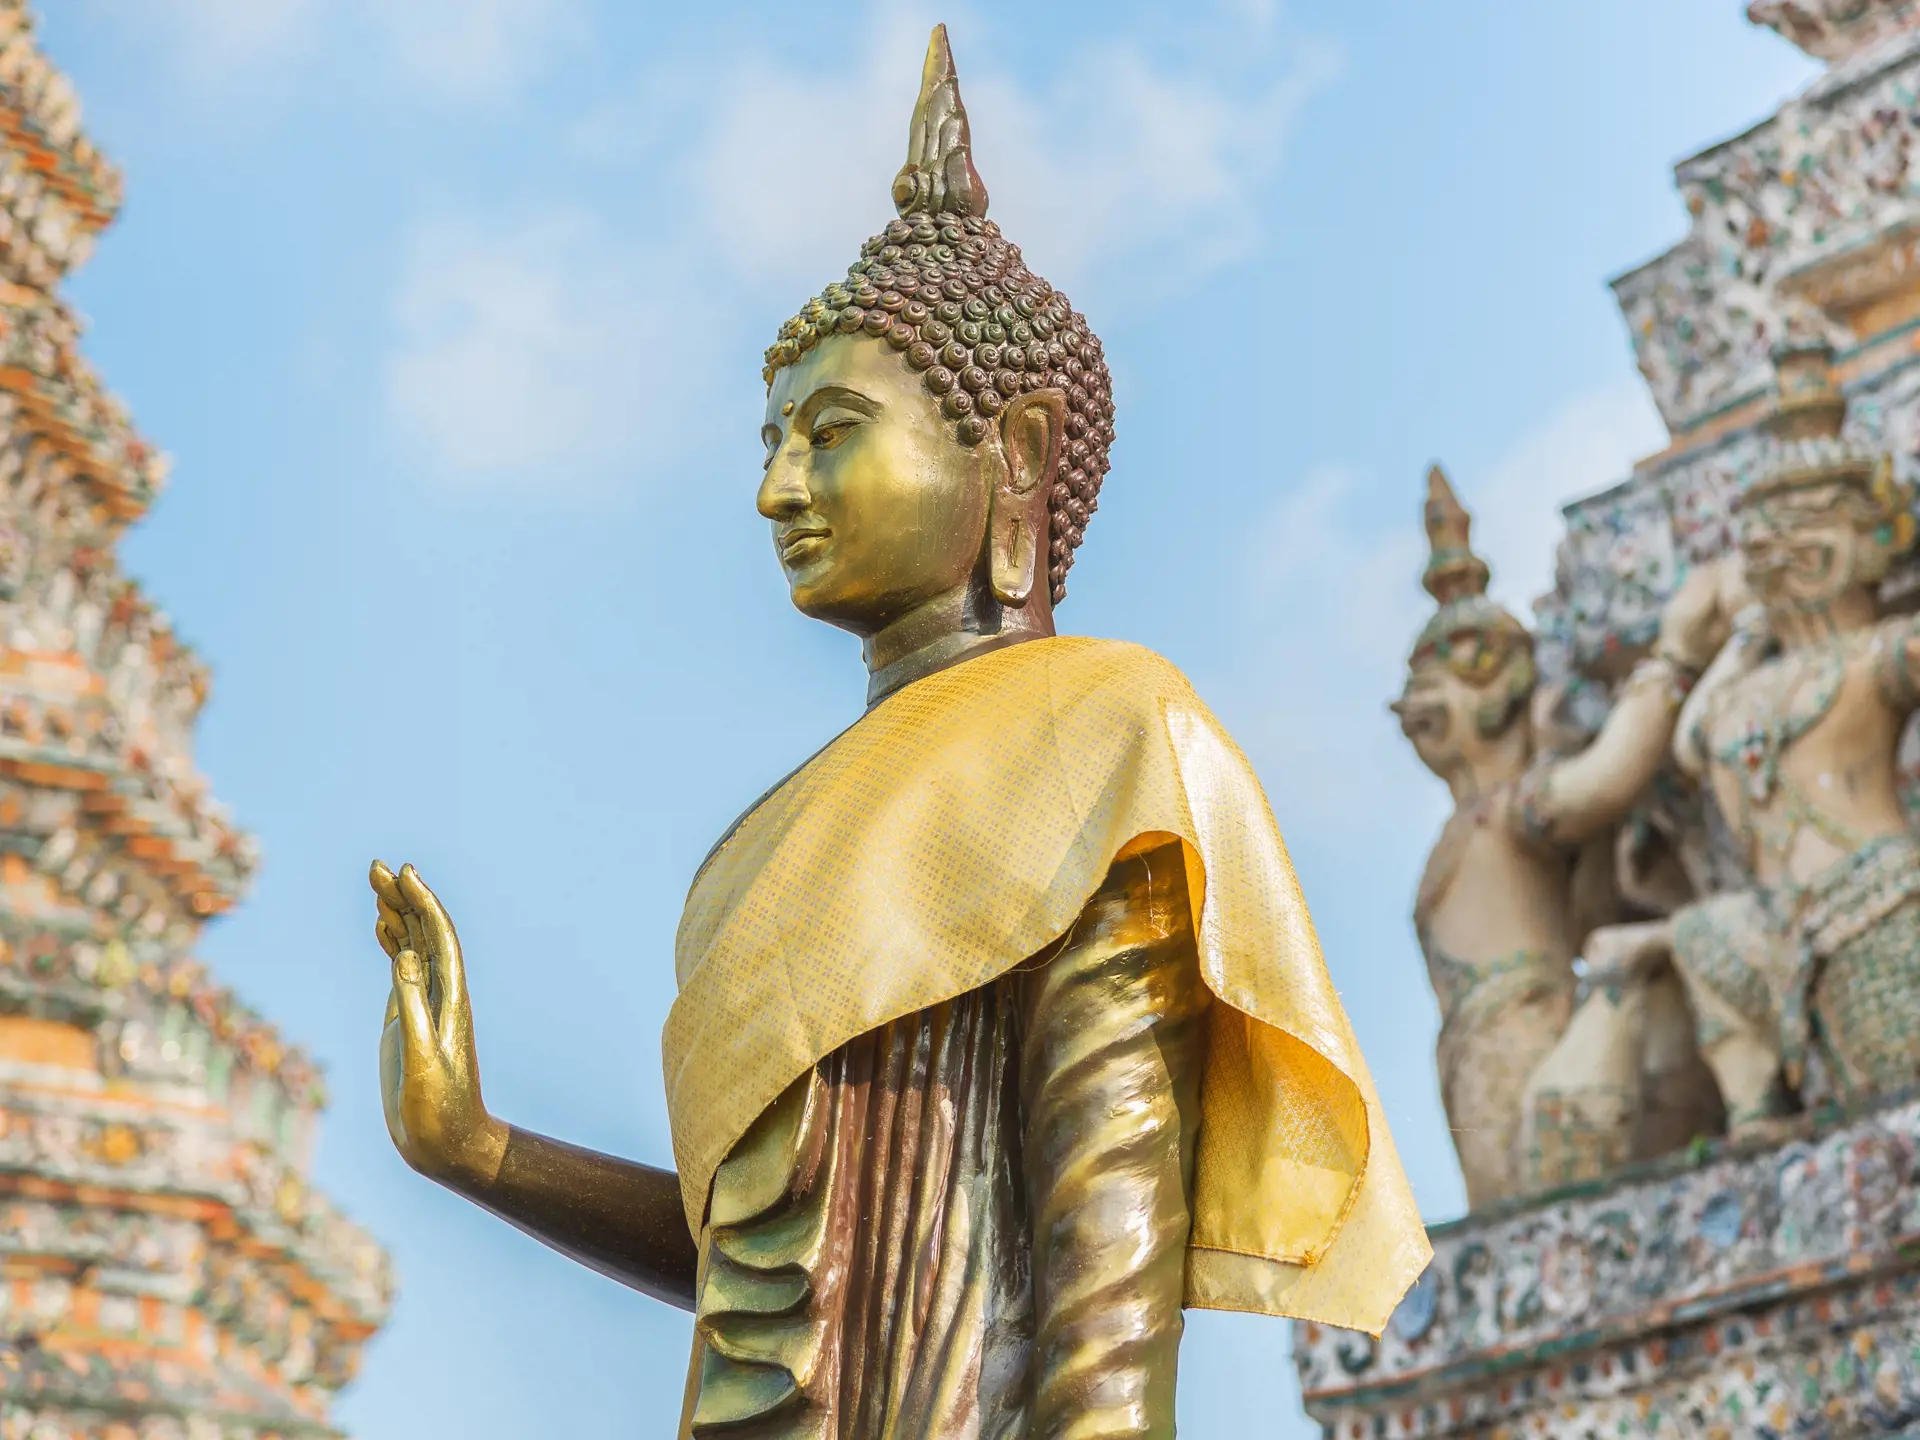 shutterstock_240628846 Thai Buddha a stupa, Golden sculpture, Wat Arun temple in Bangkok, Thailand..jpg